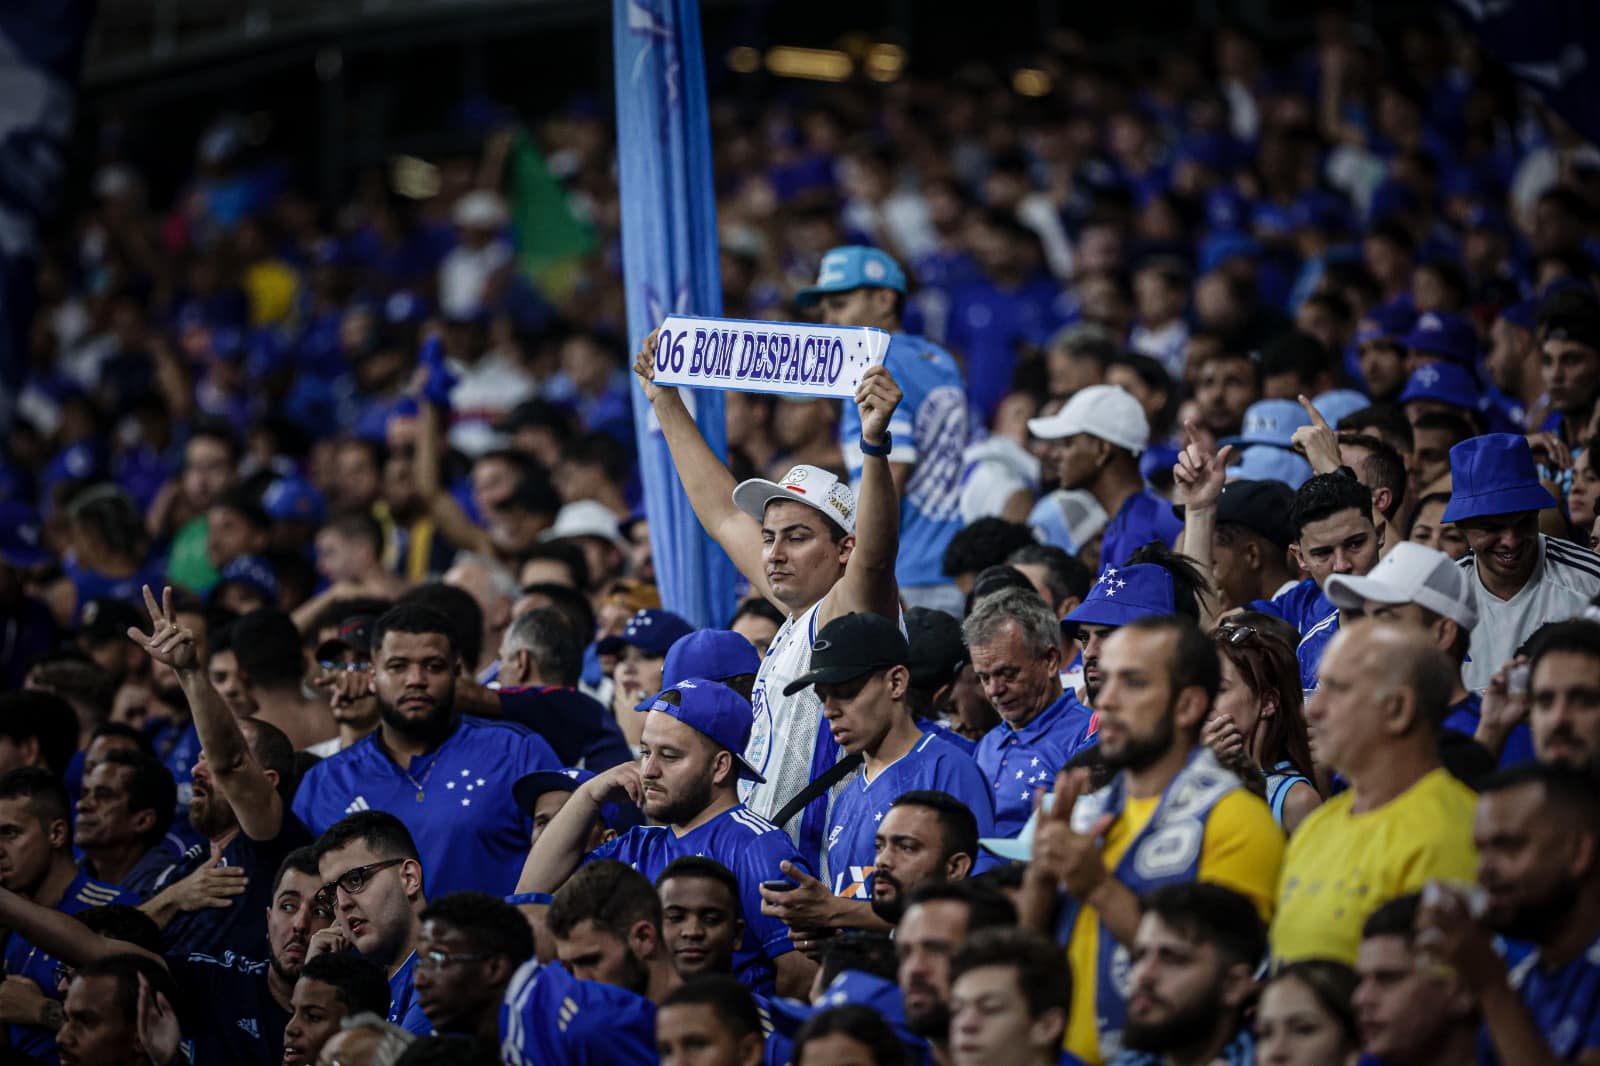 Onde assistir online o jogo do Cruzeiro hoje no Brasileirão - 21/06